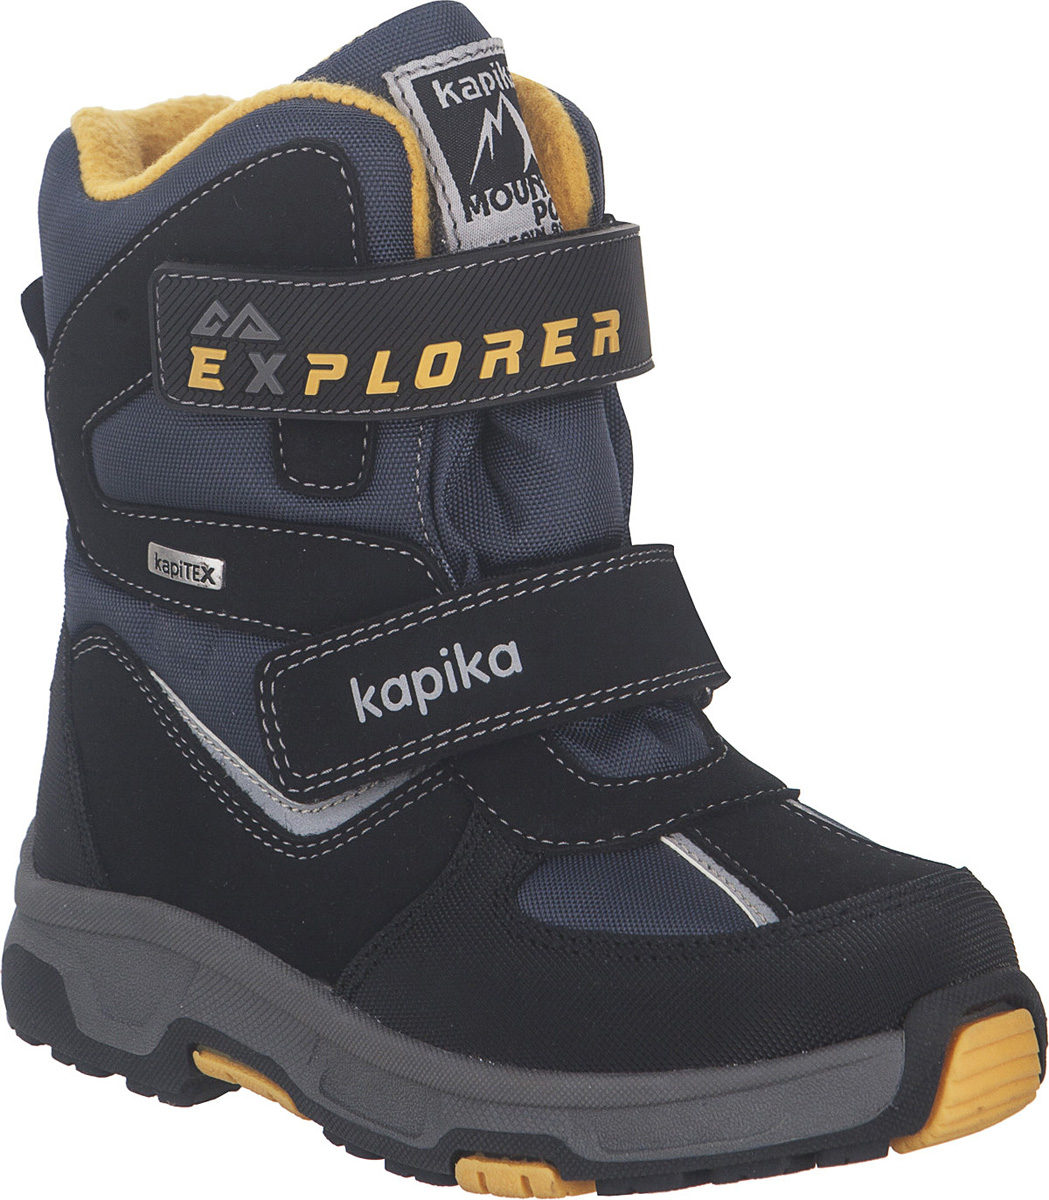 Ботинки для мальчика Kapika KapiTEX, цвет: черный, синий, желтый. 43207-2. Размер 32